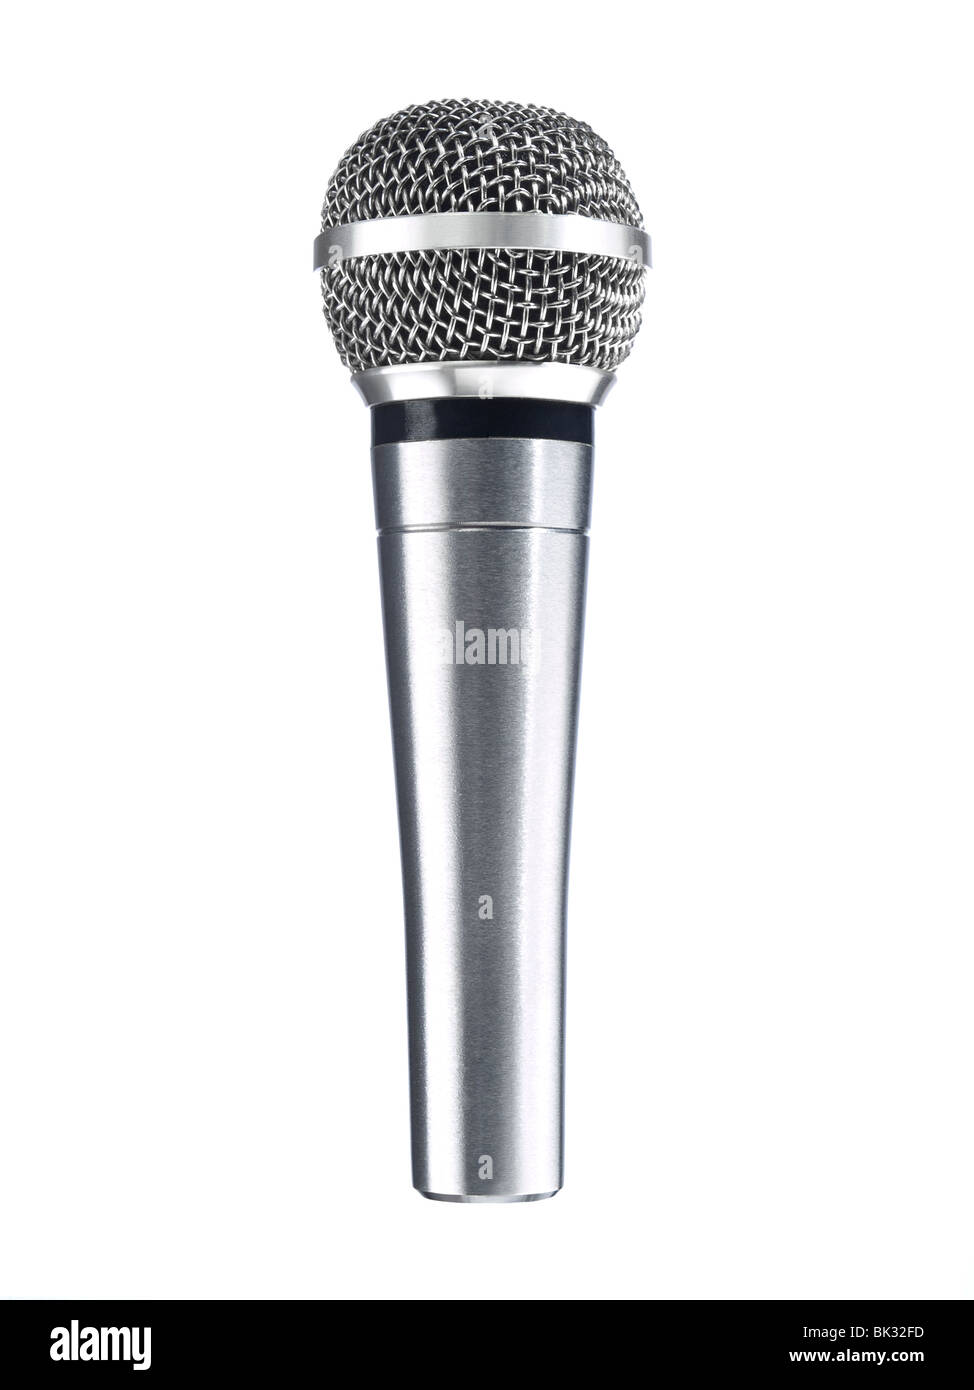 Eine metallische Mikrofon isoliert auf einem weißen Hintergrund. Stockfoto